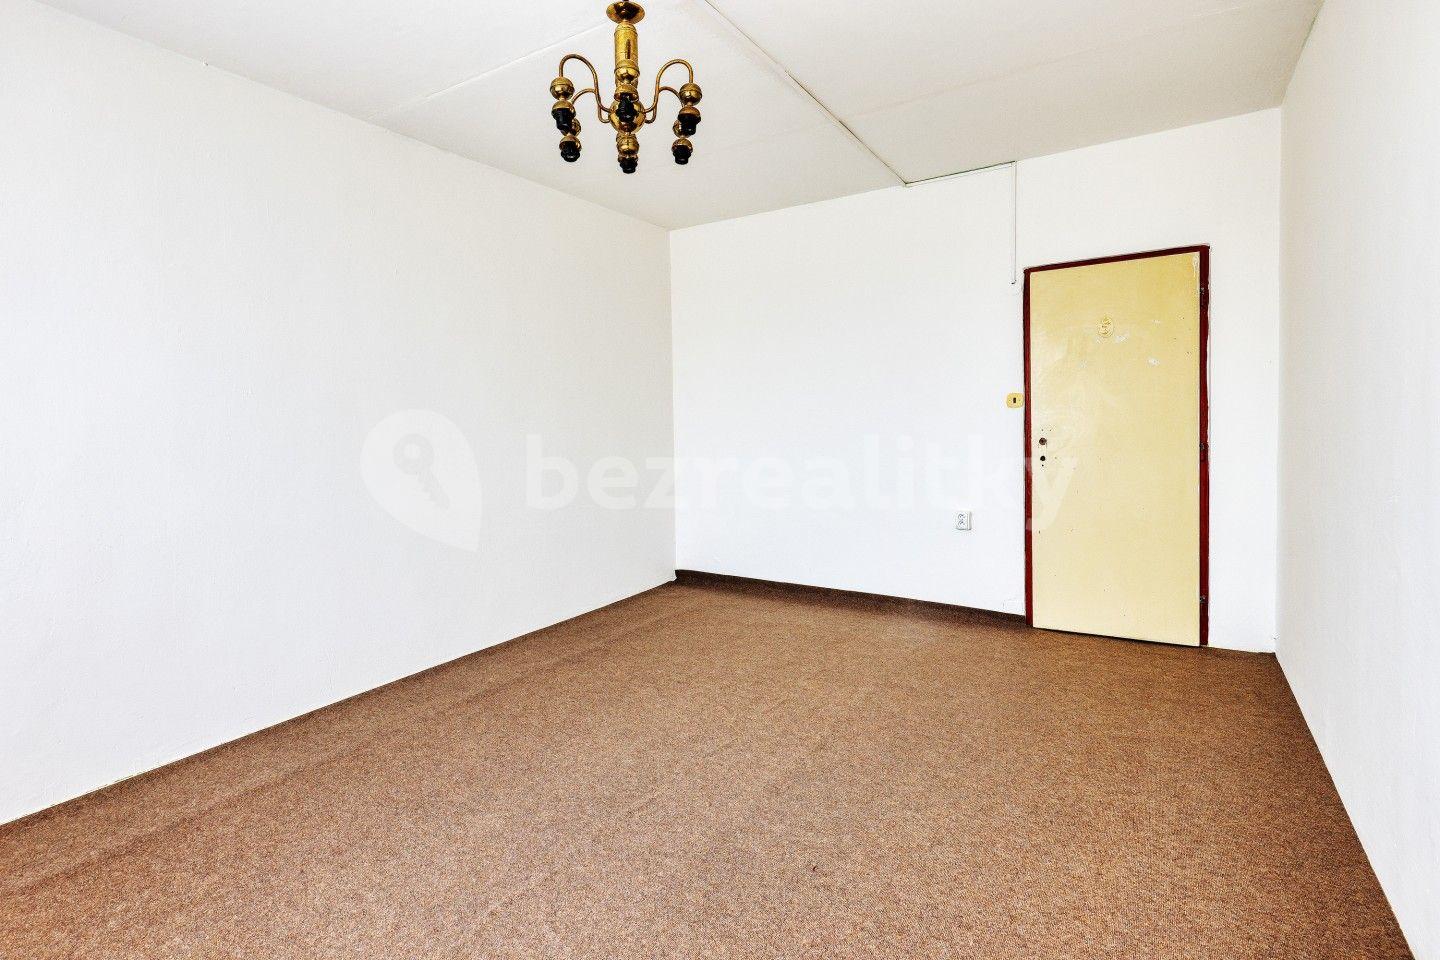 2 bedroom flat for sale, 68 m², Rovná, Karlovarský Region